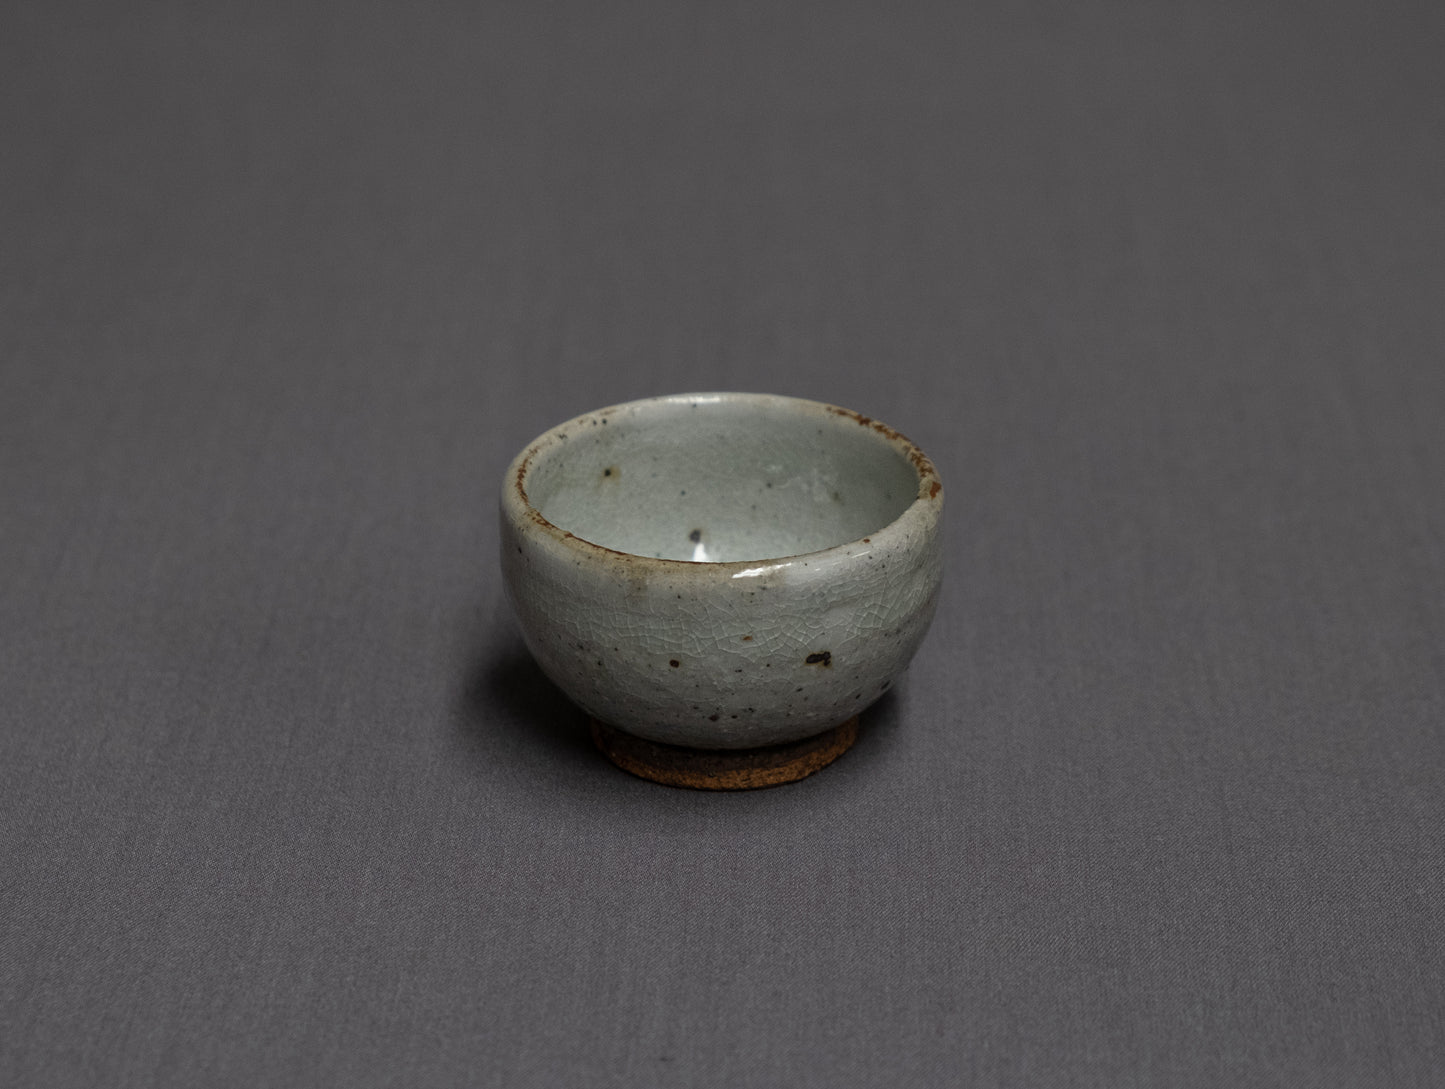 Komon Shinohara Sake Cups